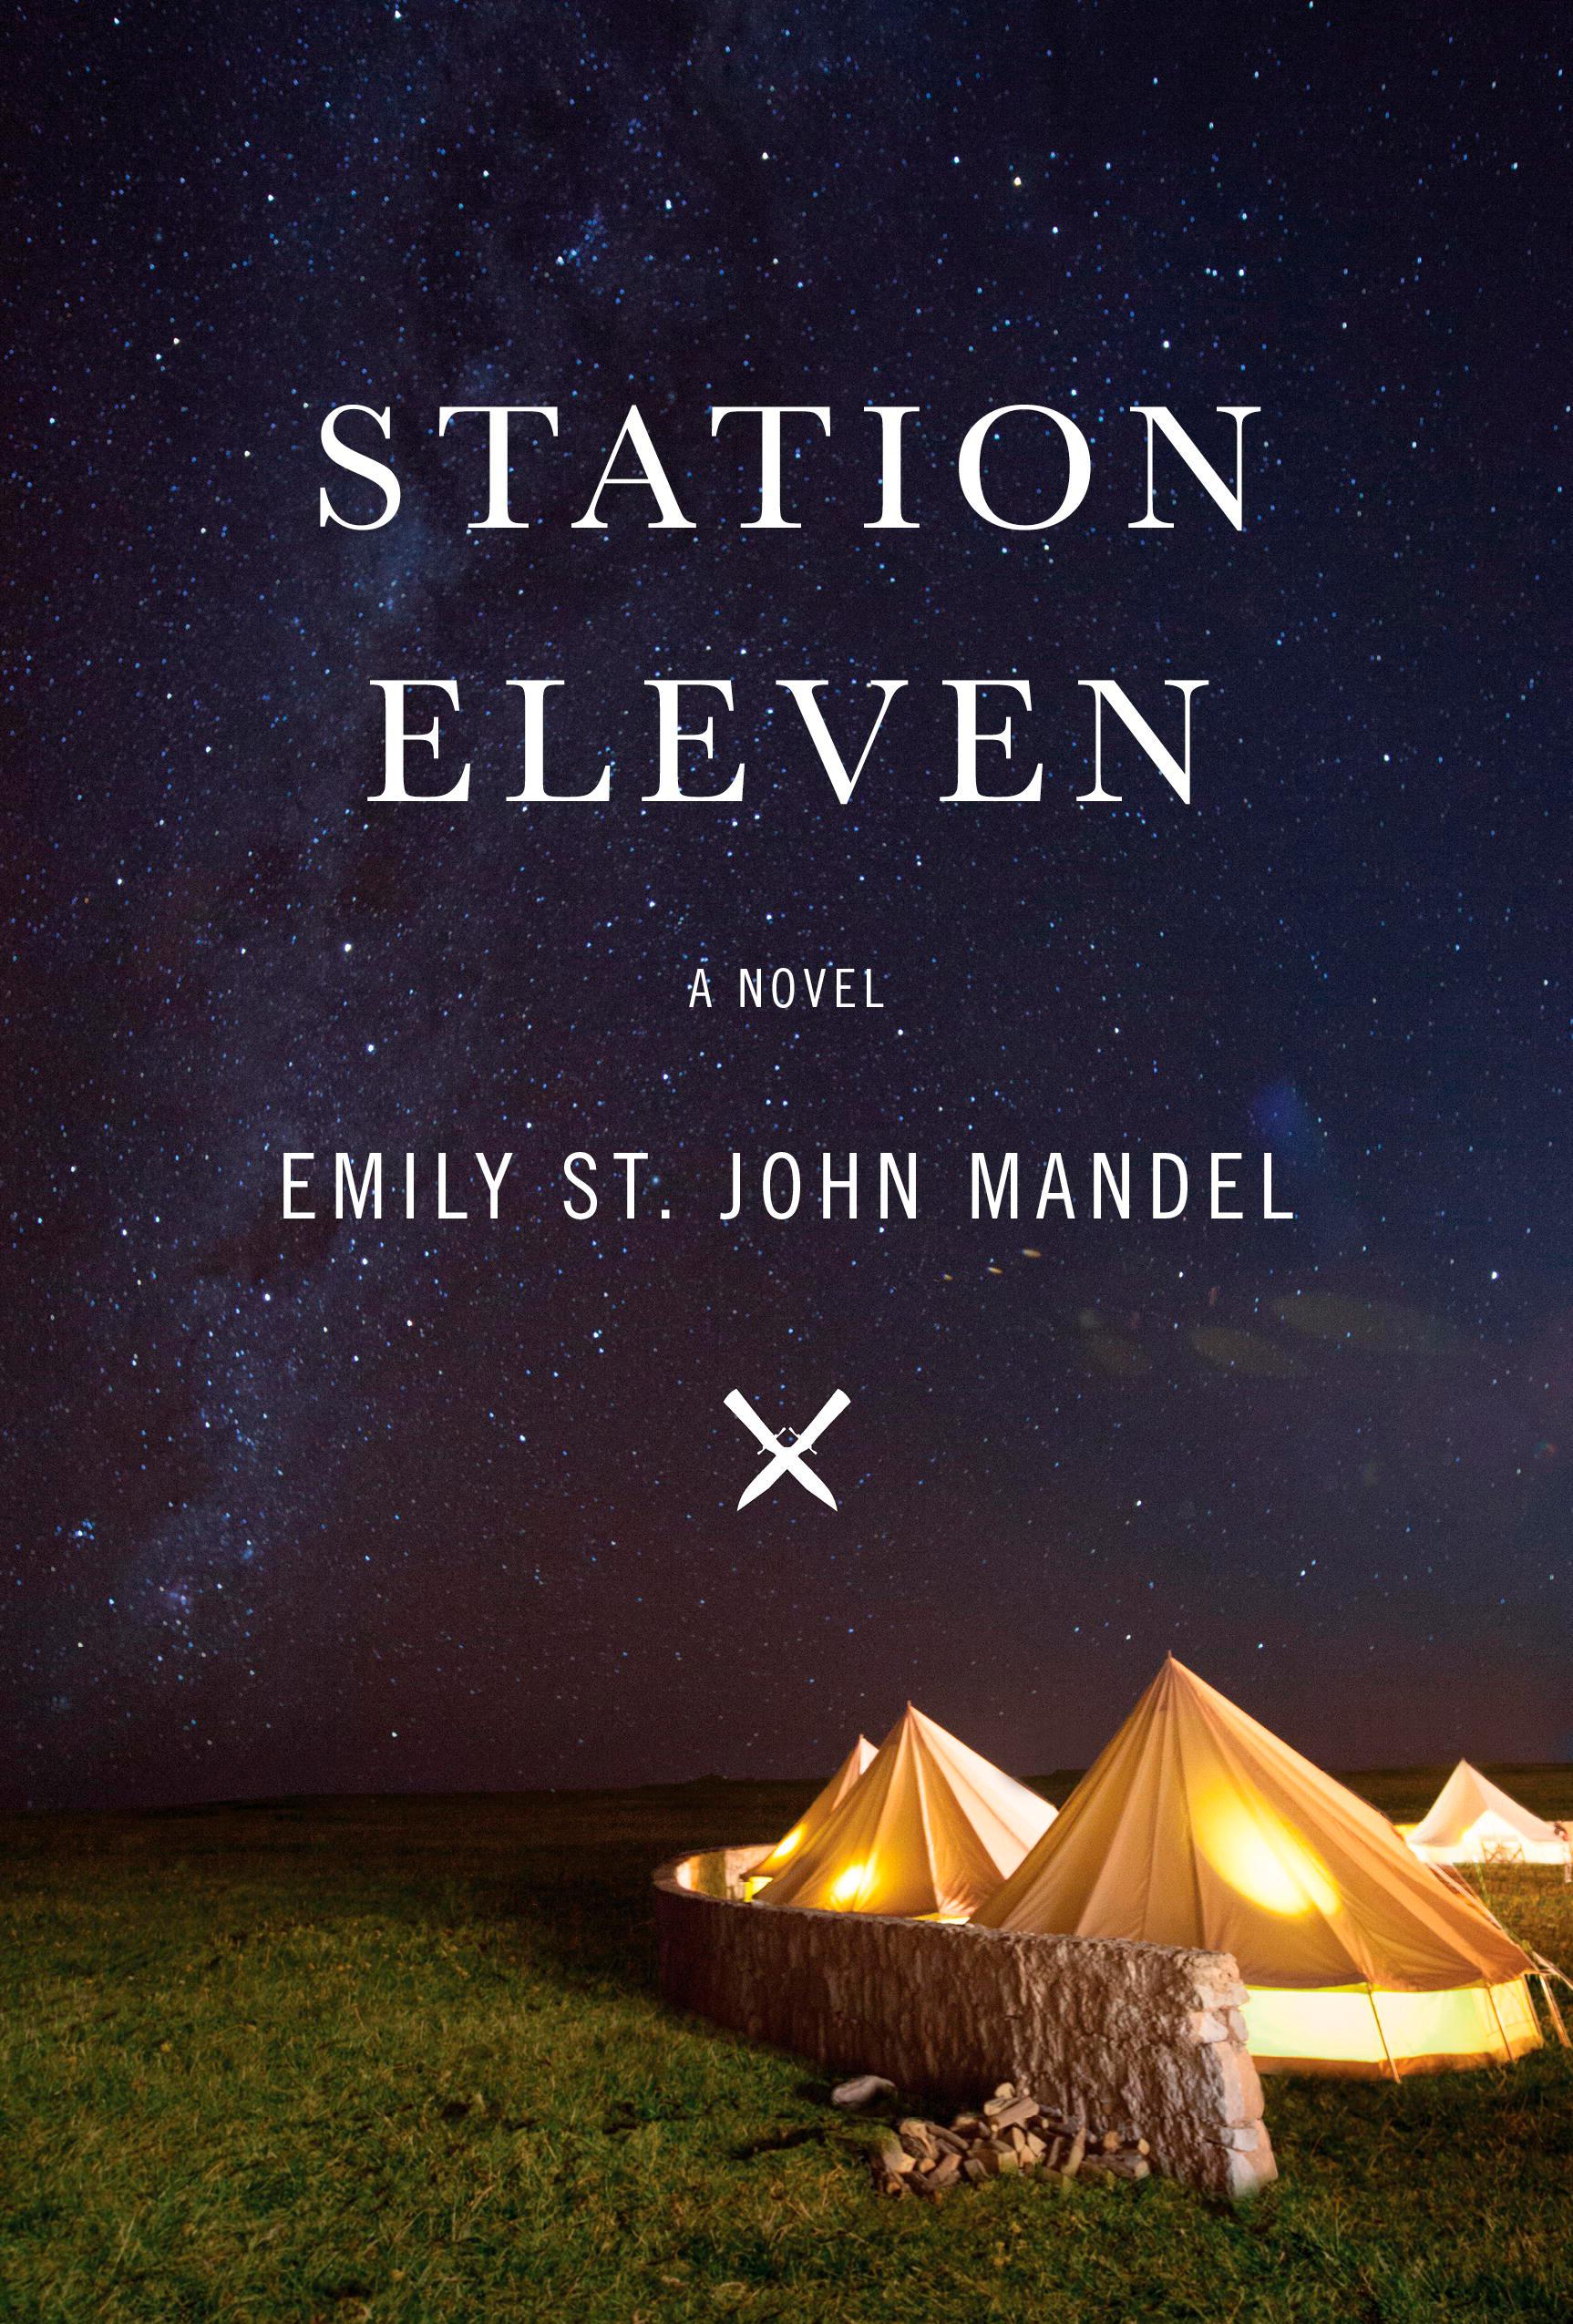 ”Station eleven” .